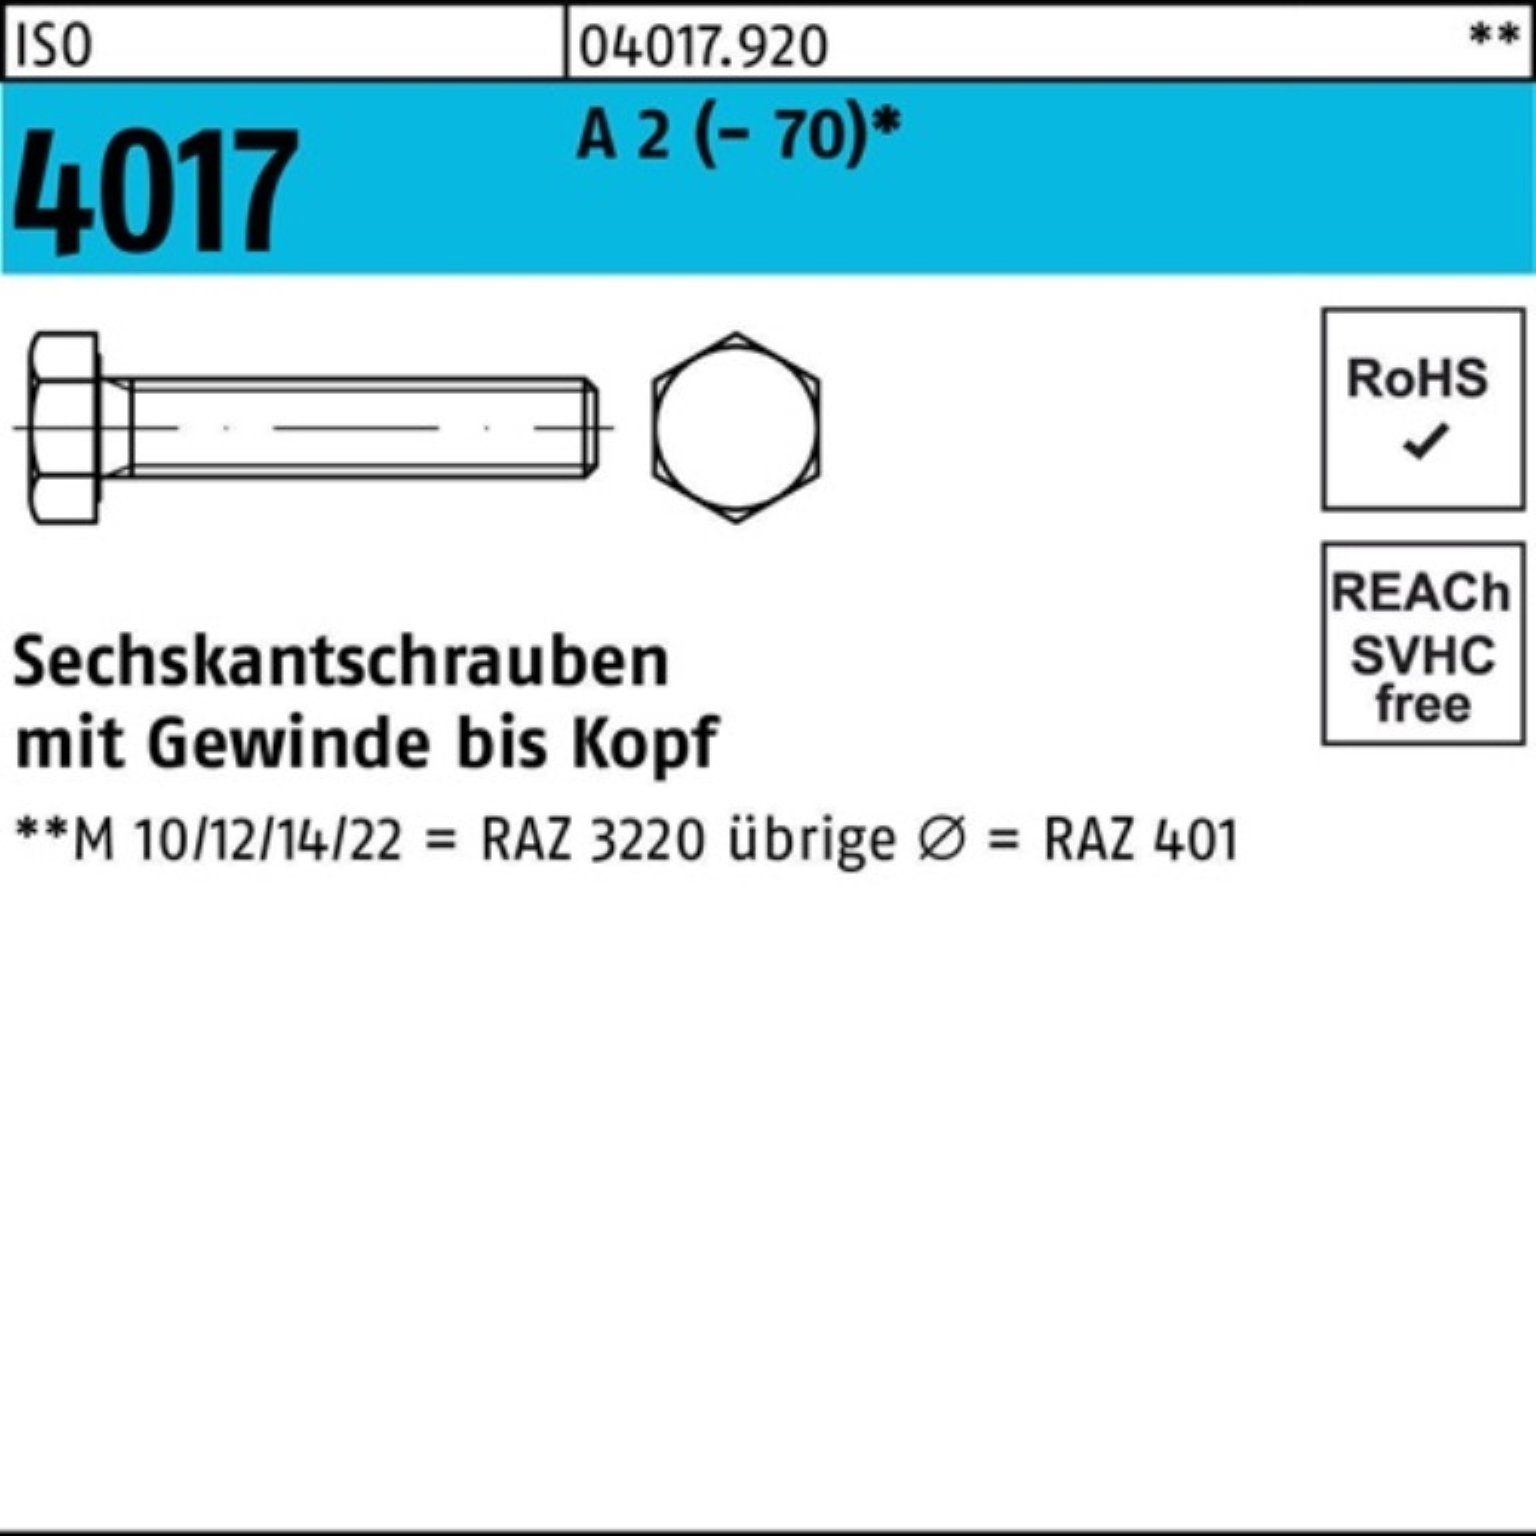 Bufab Sechskantschraube 100er Pack Sechskantschraube ISO 4017 VG M6x 70 A 2 (70) 100 Stück